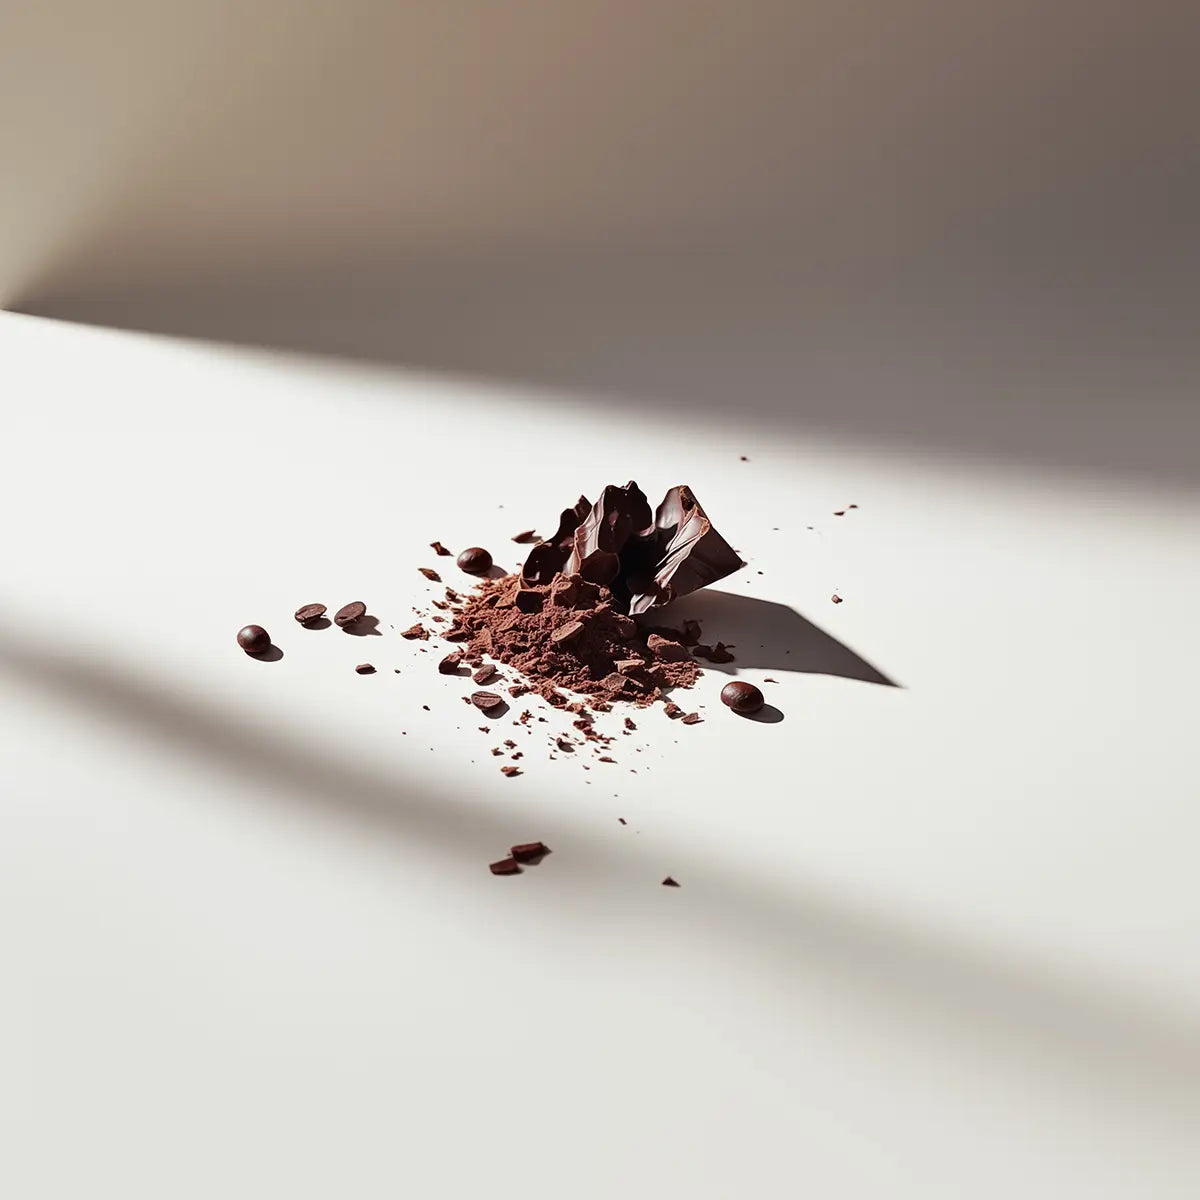 krossad choklad i olika storlekar ligger i en liten samling på en ljus yta